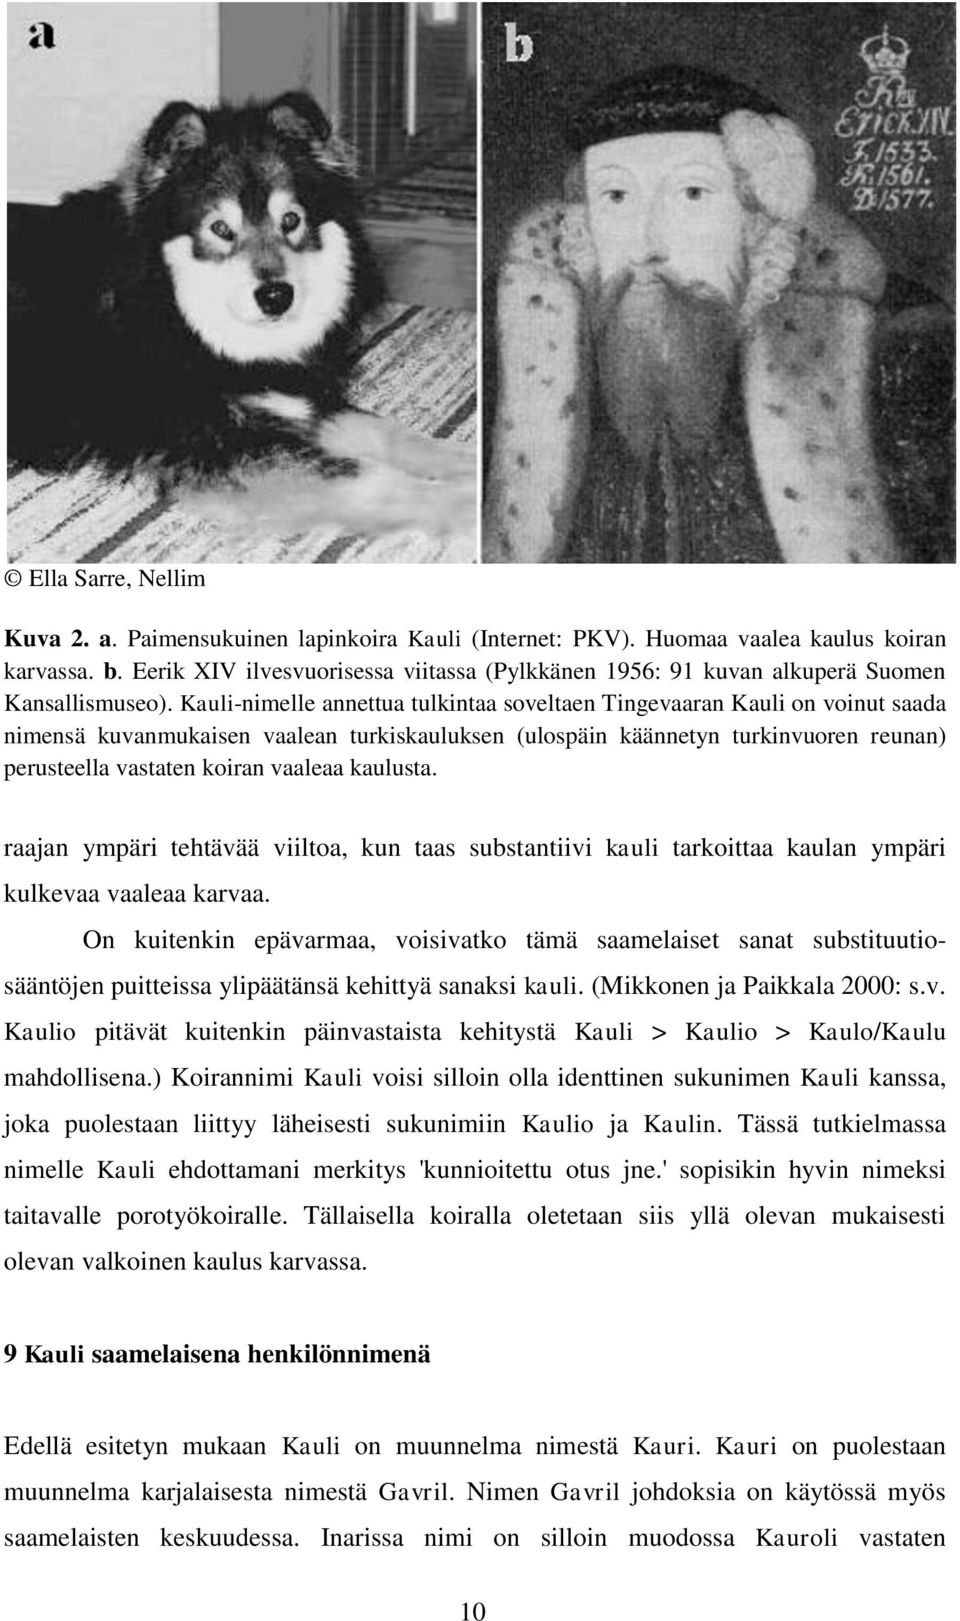 Kauli-nimelle annettua tulkintaa soveltaen Tingevaaran Kauli on voinut saada nimensä kuvanmukaisen vaalean turkiskauluksen (ulospäin käännetyn turkinvuoren reunan) perusteella vastaten koiran vaaleaa